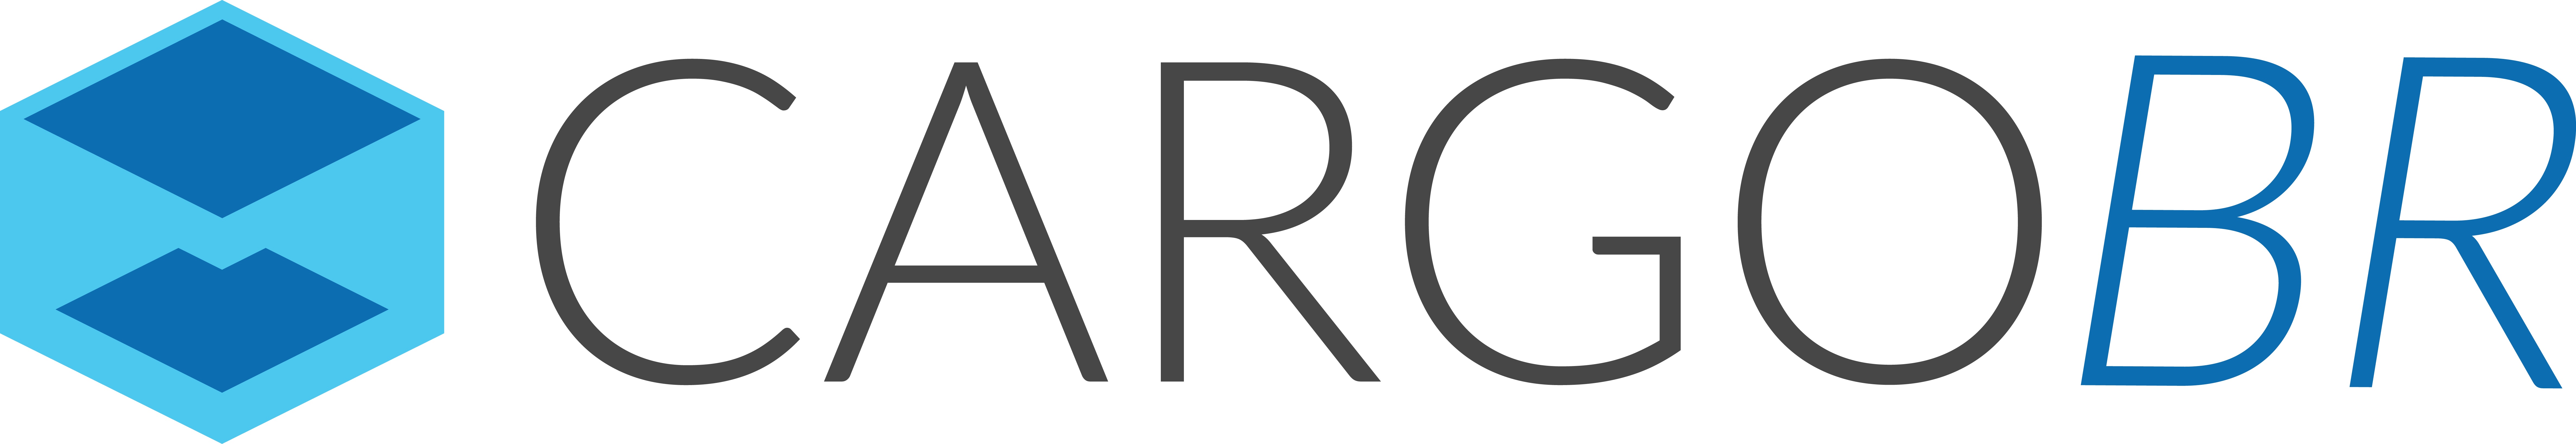 Startup - CARGOBR S/A | MundoLogística - portal e revista de logística e supply chain